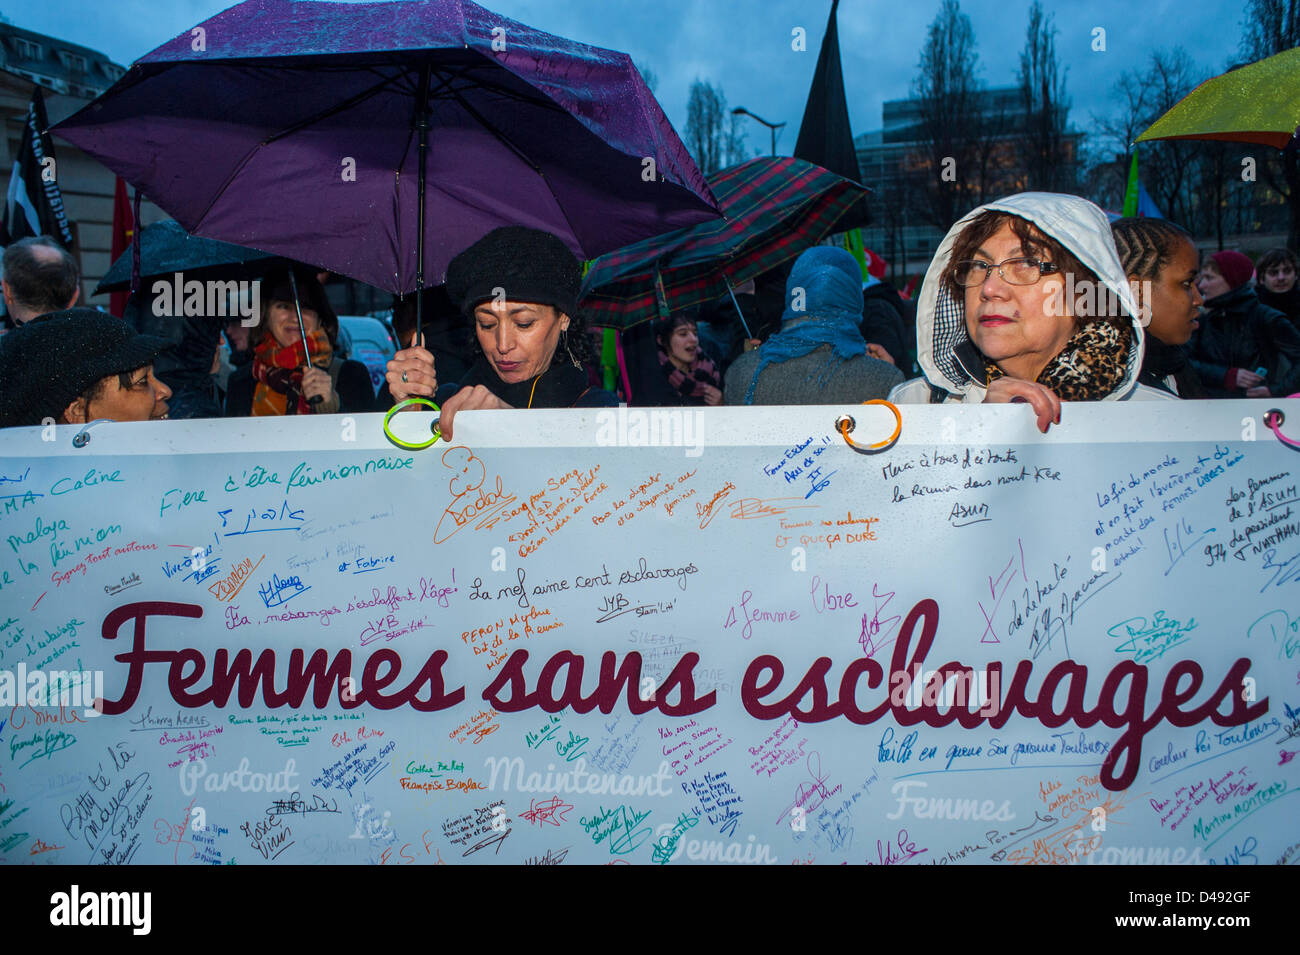 Paris, France. 8 mars groupes féministes français défilant dans la manifestation annuelle de la Journée internationale de la femme, manifestations, femmes tenant des bannières de protestation. Activistes des droits de l'homme "femmes sans esclaves", marche pour l'égalité des droits des femmes, slogans de justice sociale, signes d'autonomisation des femmes Banque D'Images